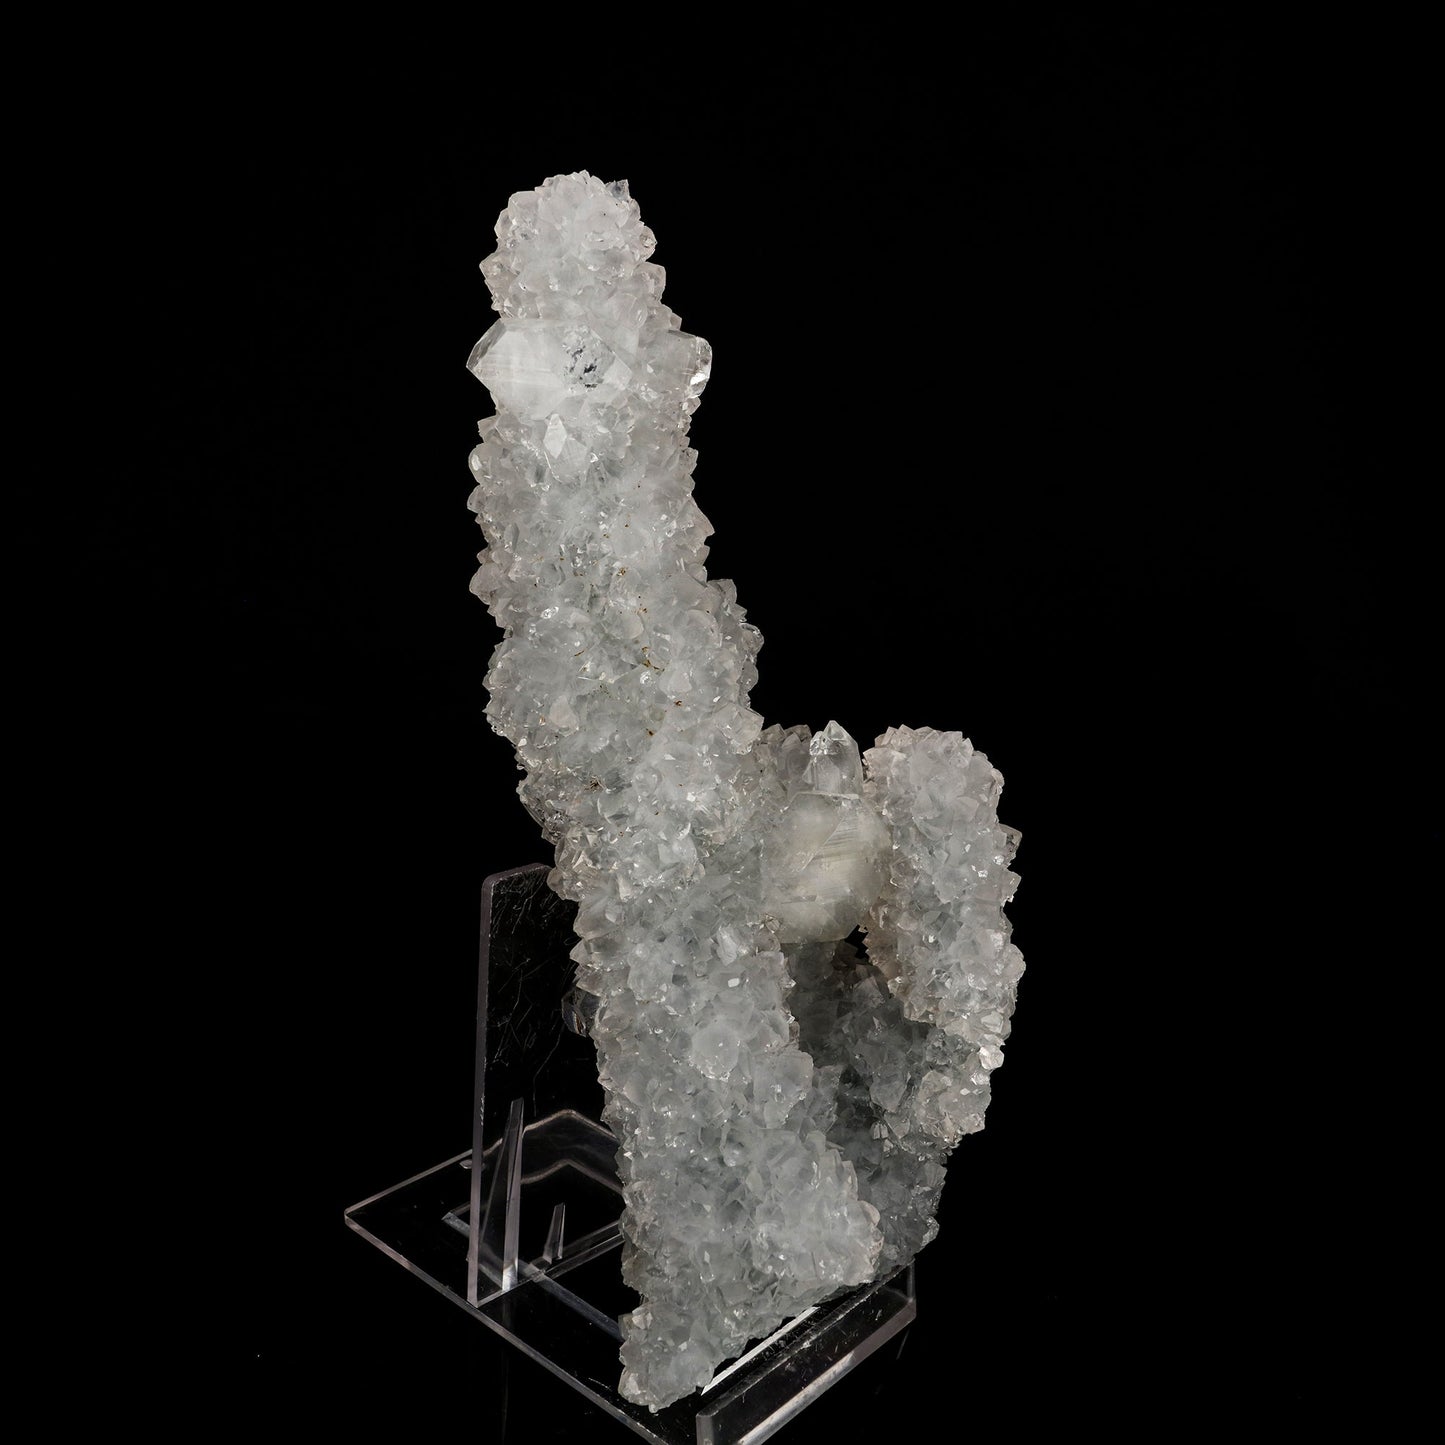 Apophyllite on MM Quartz Natural Mineral Specimen # B 6341 Apophyllite Superb Minerals 